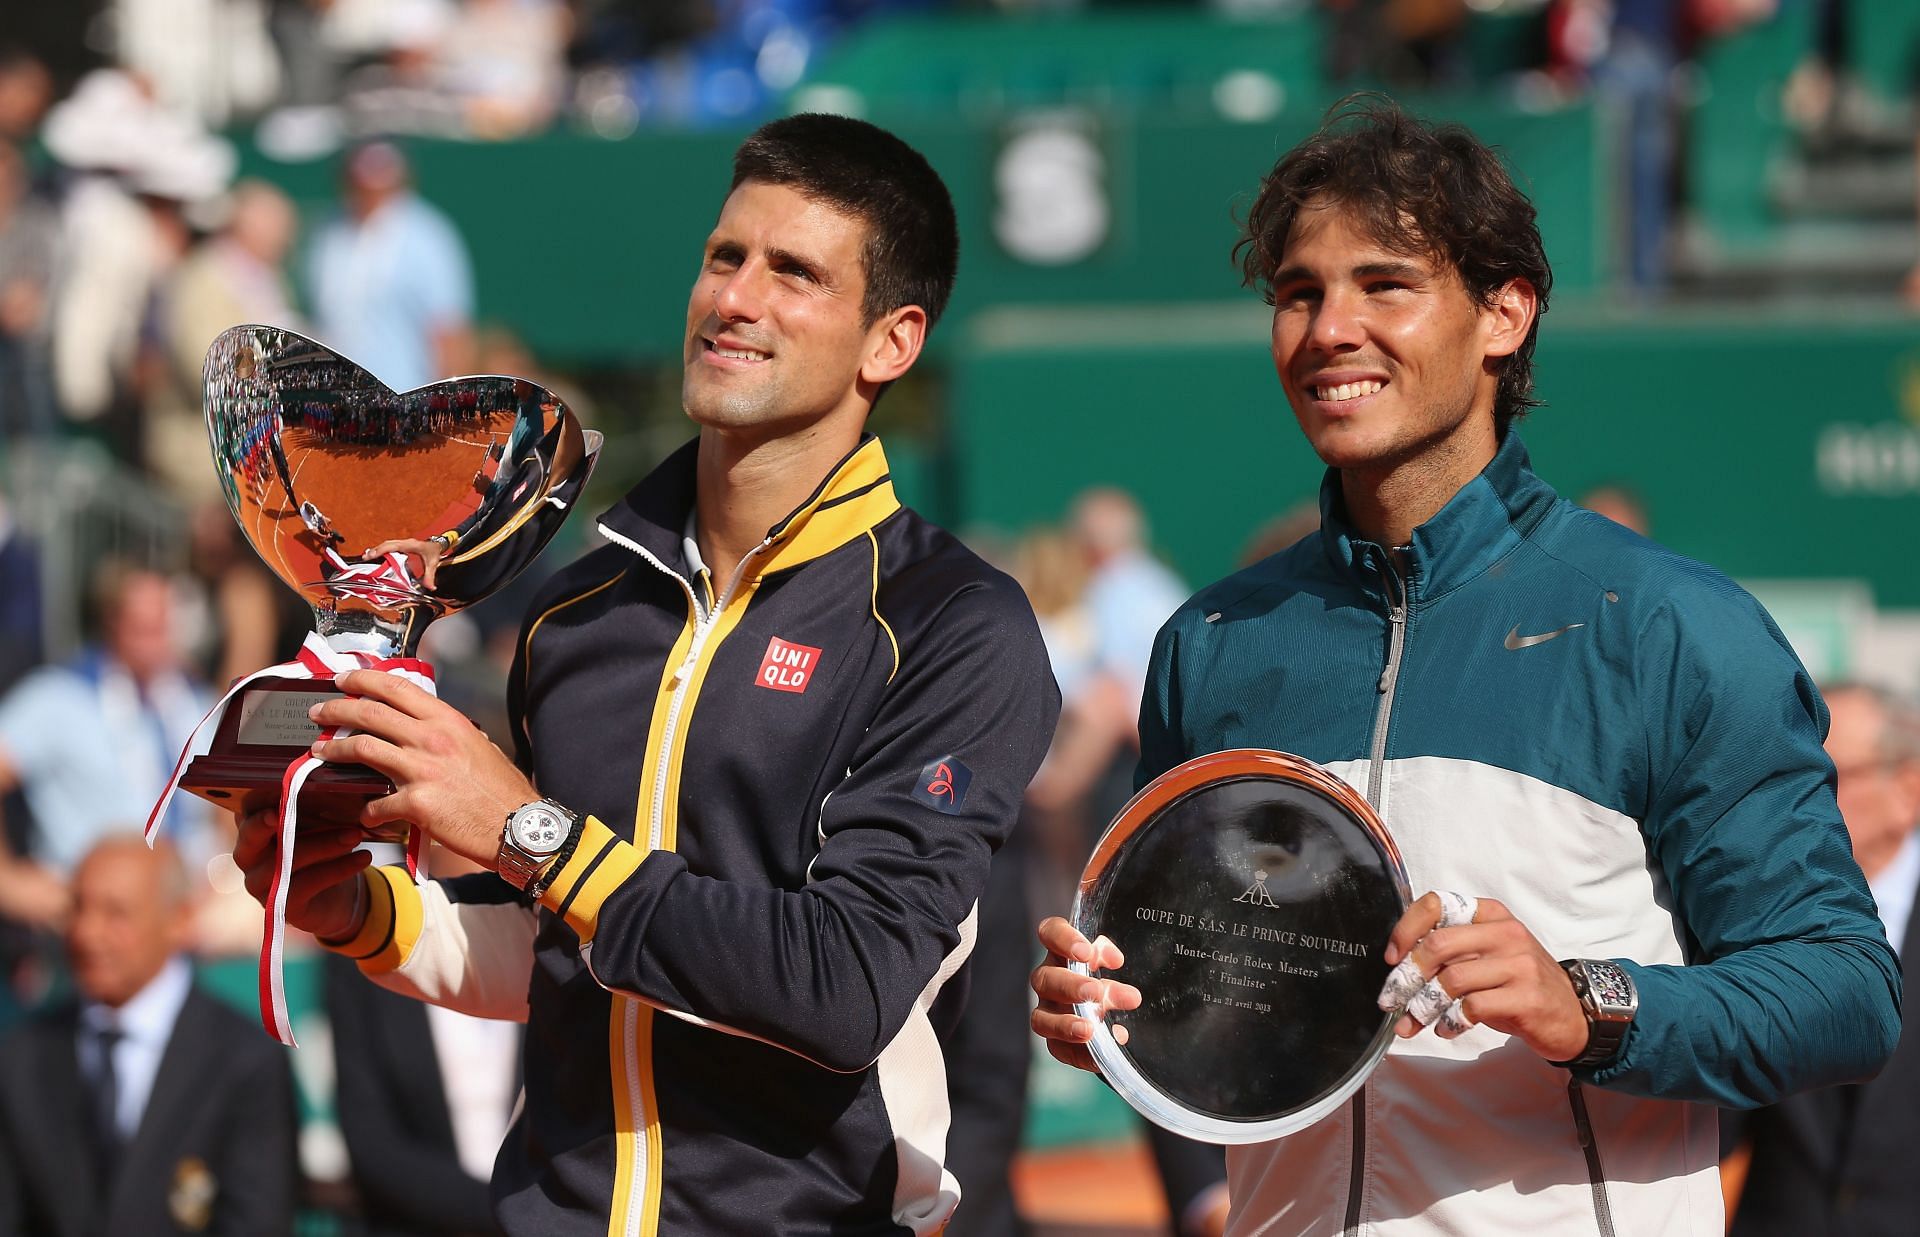 Djokovic (left) and Nadal